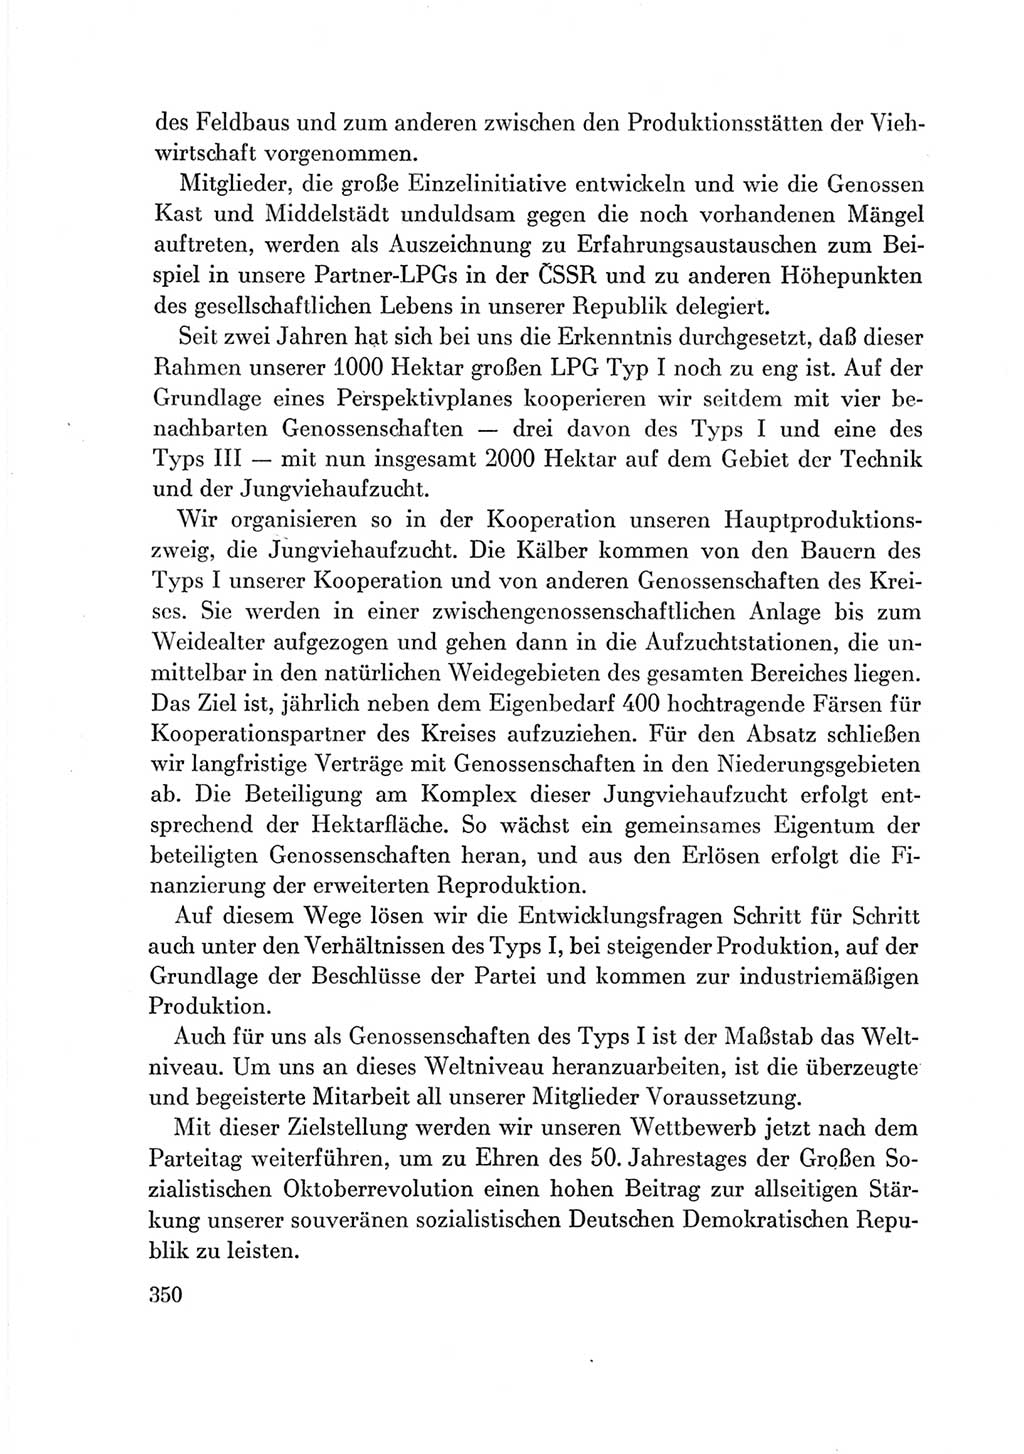 Protokoll der Verhandlungen des Ⅶ. Parteitages der Sozialistischen Einheitspartei Deutschlands (SED) [Deutsche Demokratische Republik (DDR)] 1967, Band Ⅲ, Seite 350 (Prot. Verh. Ⅶ. PT SED DDR 1967, Bd. Ⅲ, S. 350)